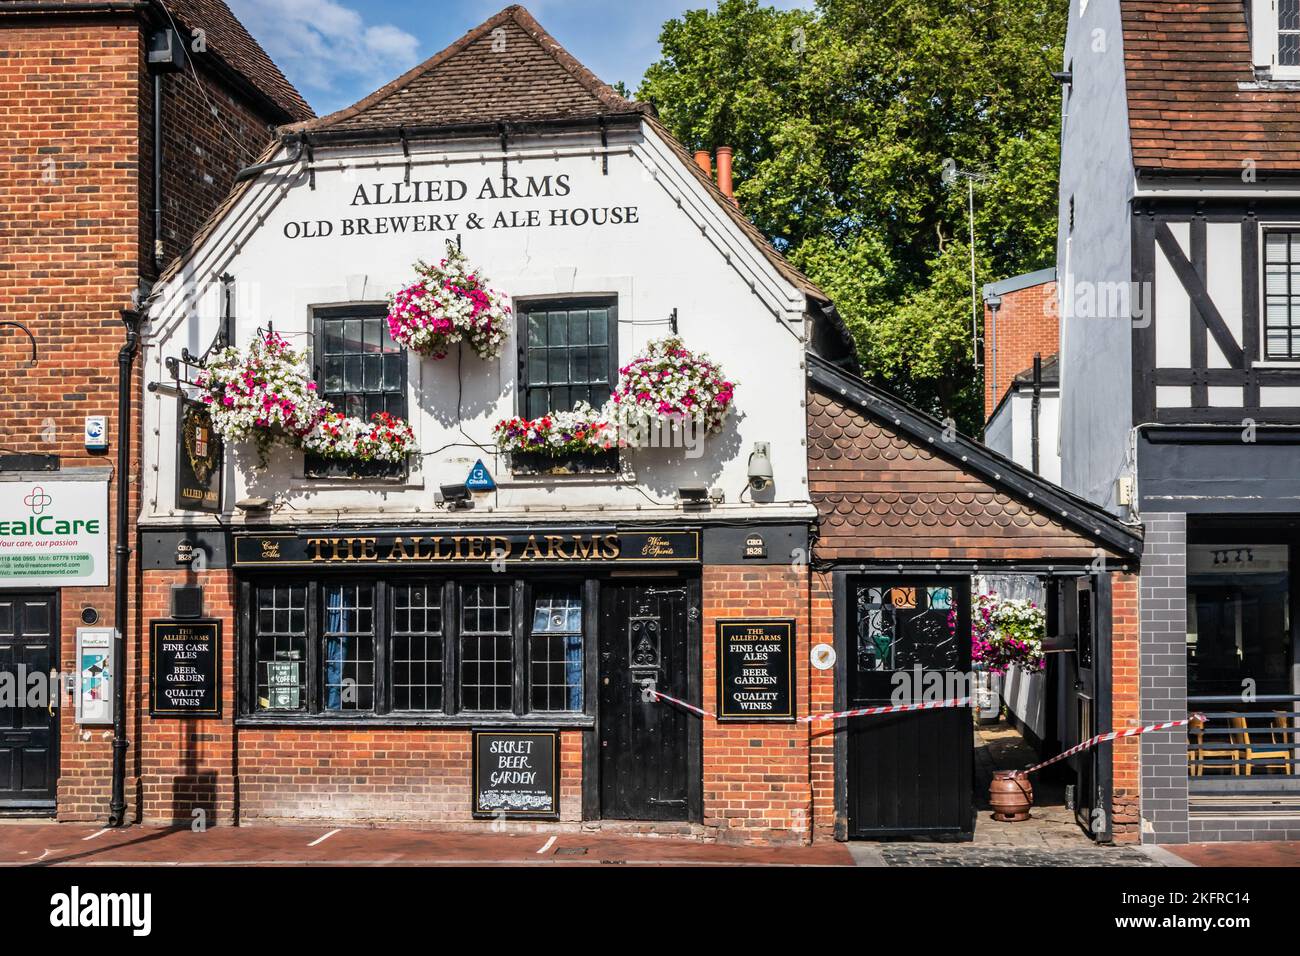 Ancienne brasserie et maison de bière Allied Arms, Reading, Berkshire, Angleterre Banque D'Images